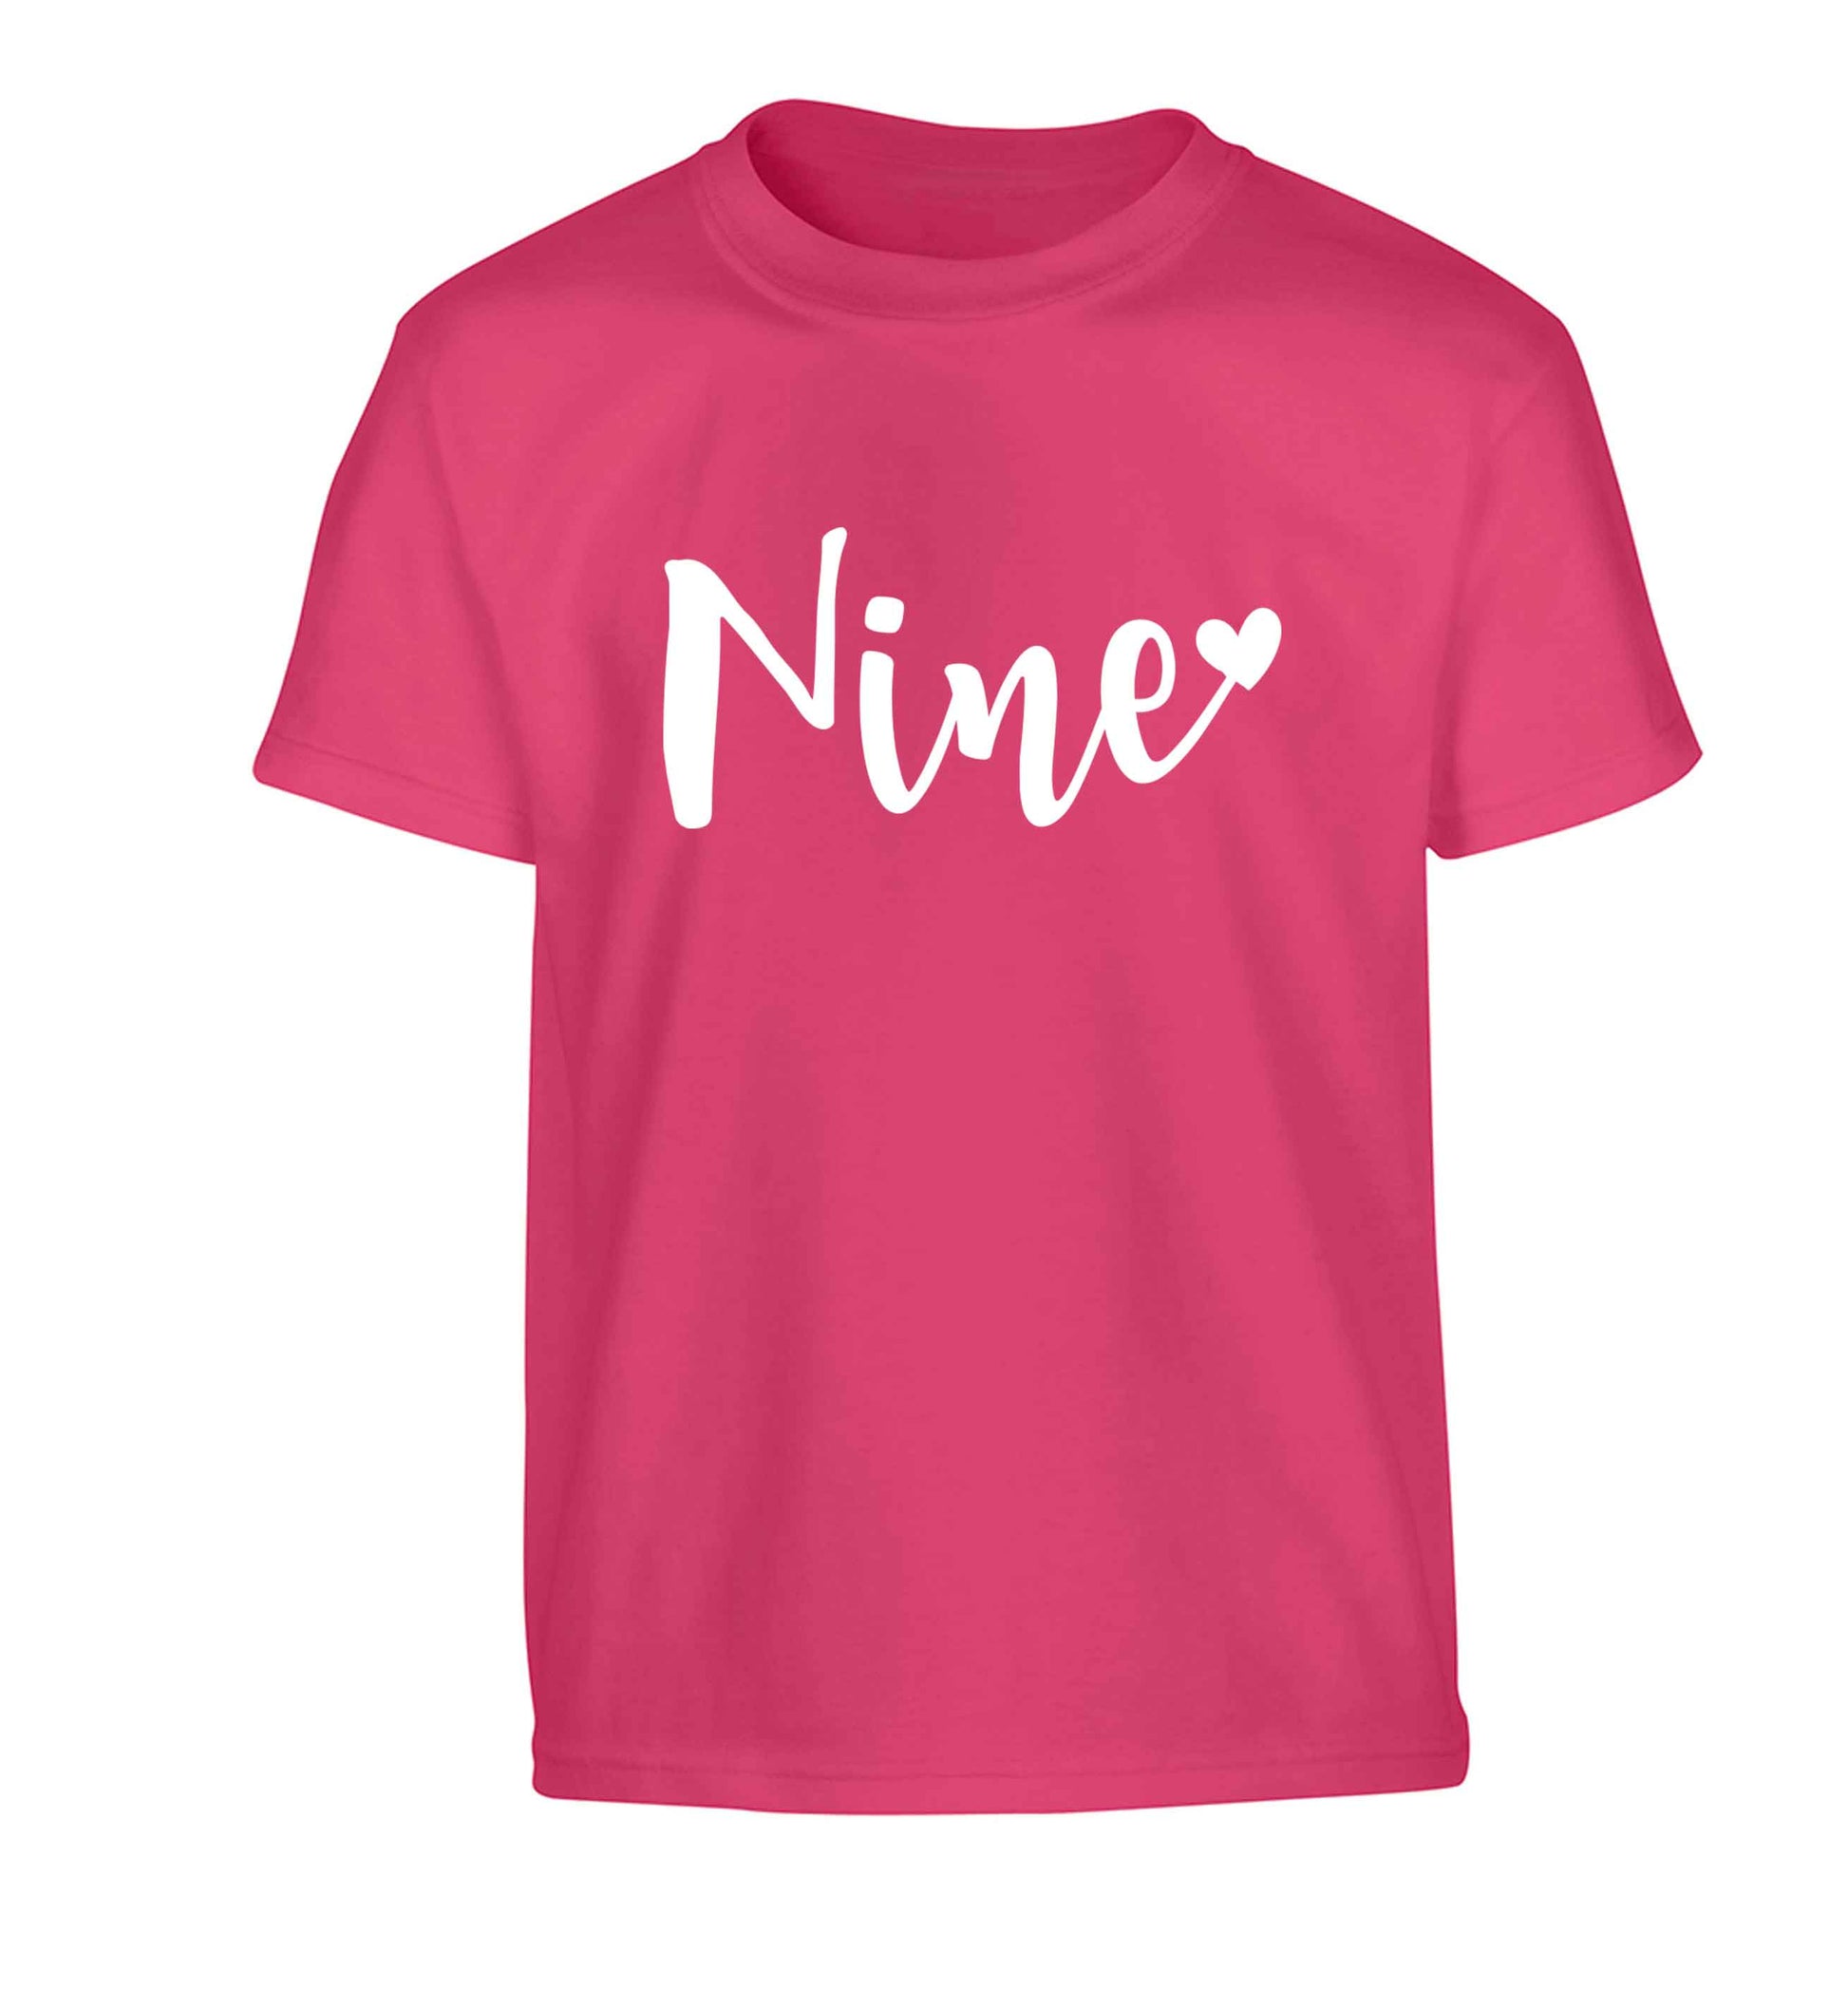 Nine and heart Children's pink Tshirt 12-13 Years